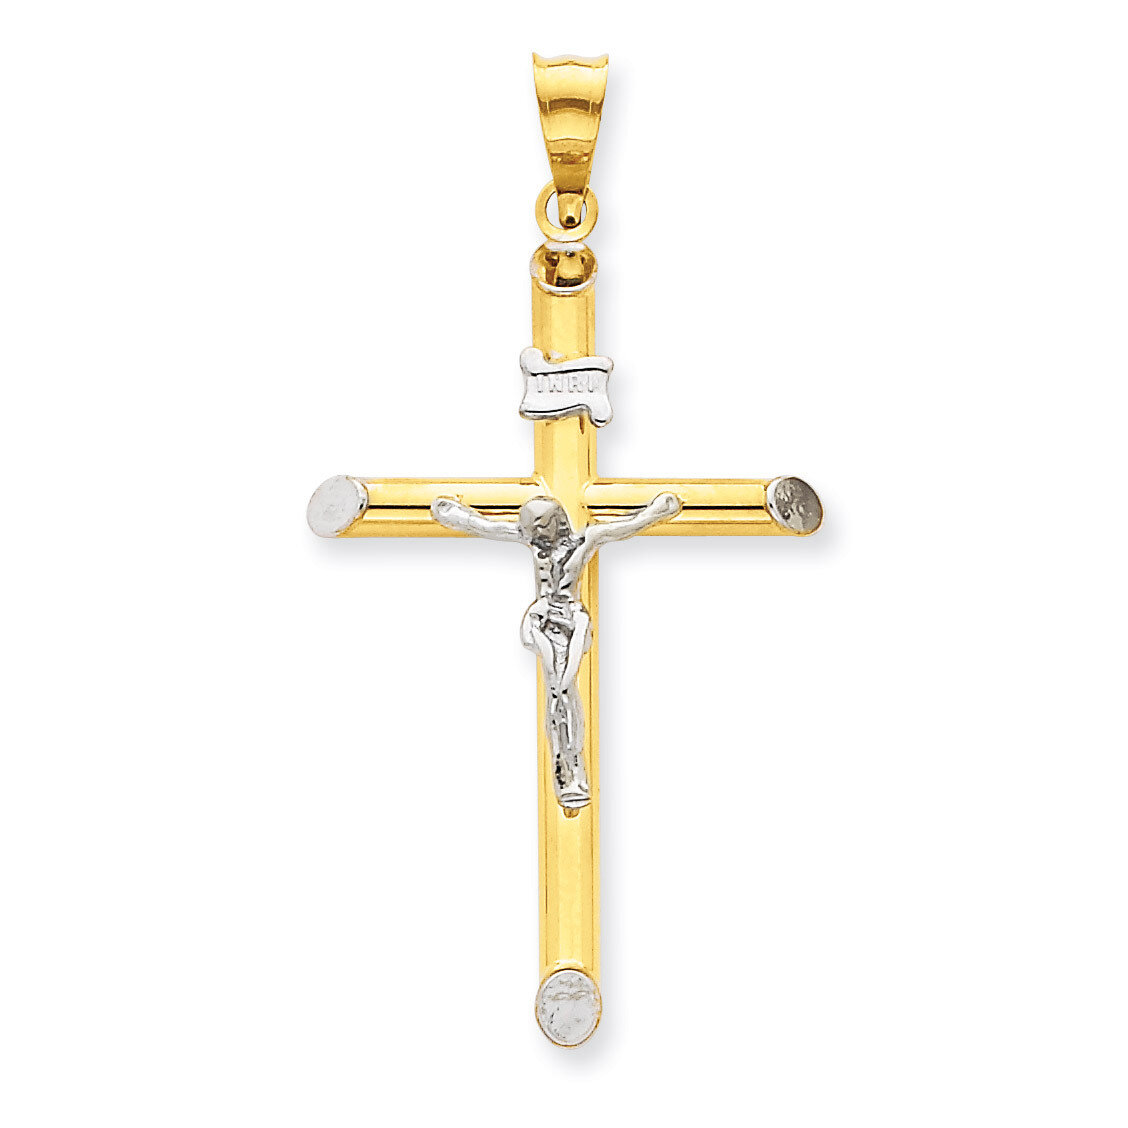 INRI Crucifix Pendant 14k Two-Tone Gold K3723